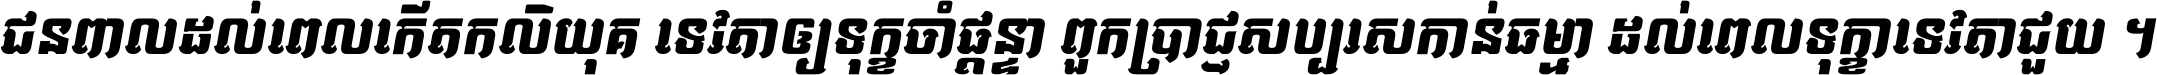 Kh Baphnom 043 Dany Italic